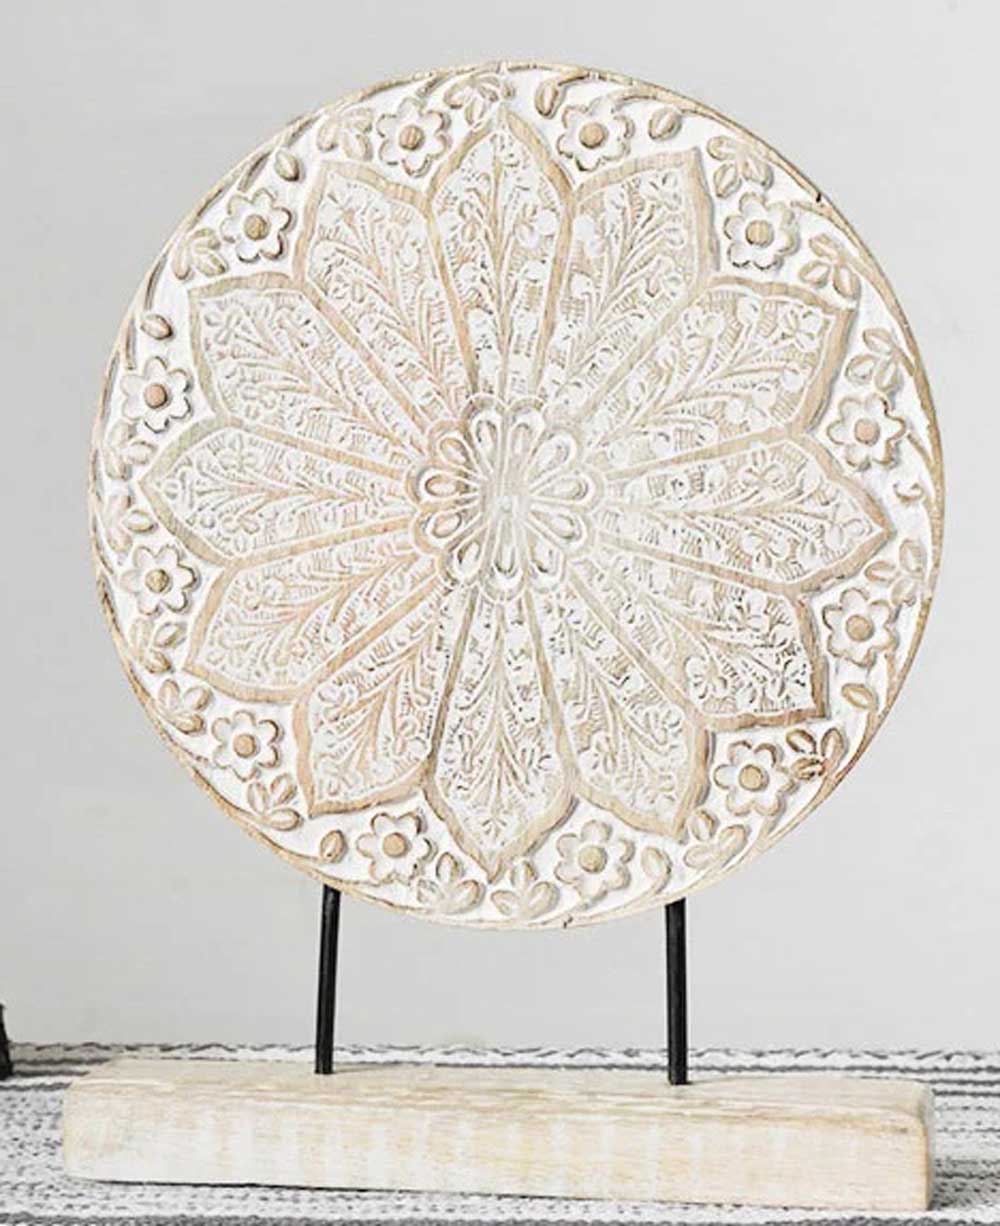 Self-Standing Lotus Mandala Wood Carving - Posters, Prints, & Visual Artwork